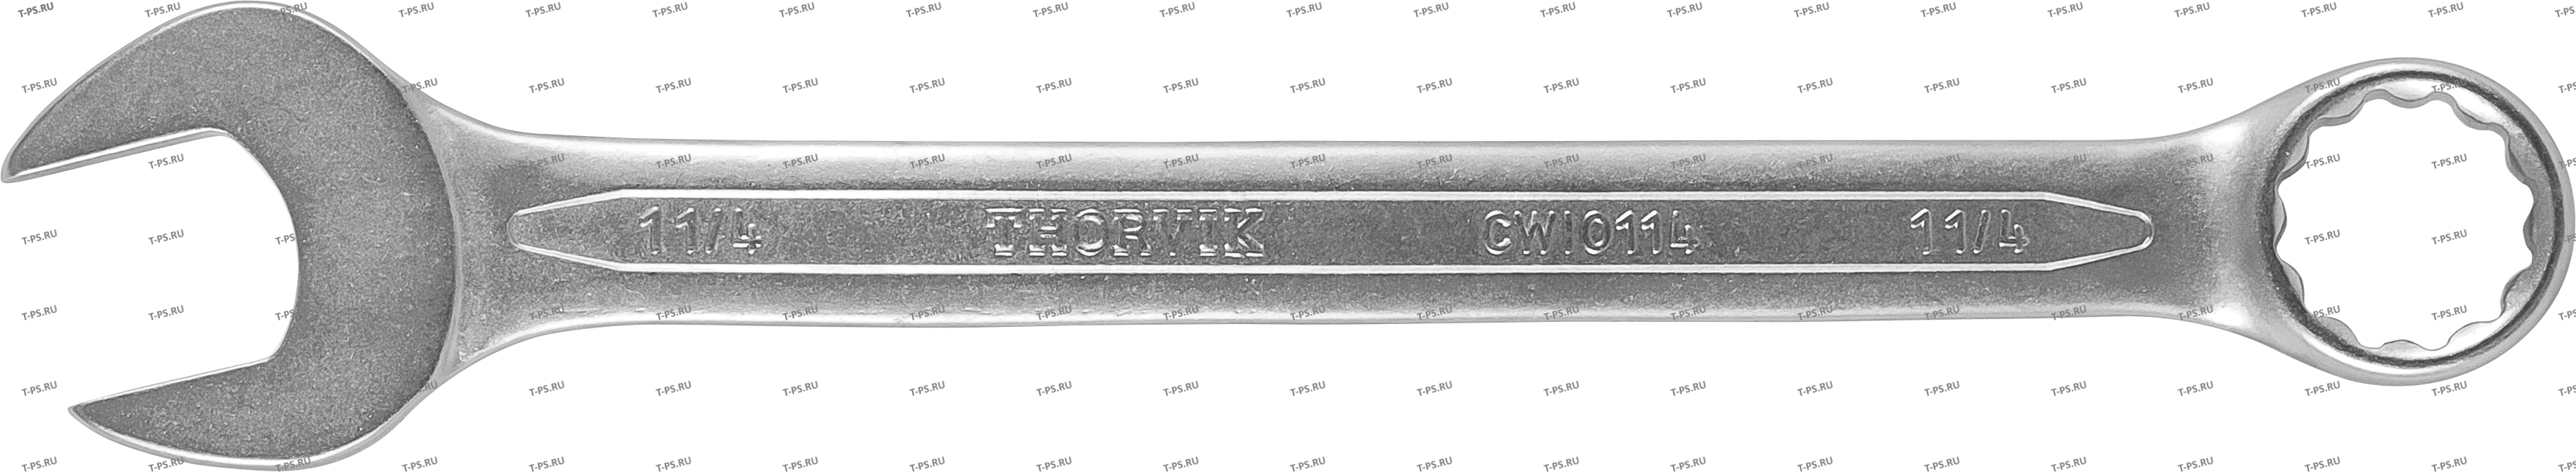 CWI0716 Ключ гаечный комбинированный дюймовый, 716